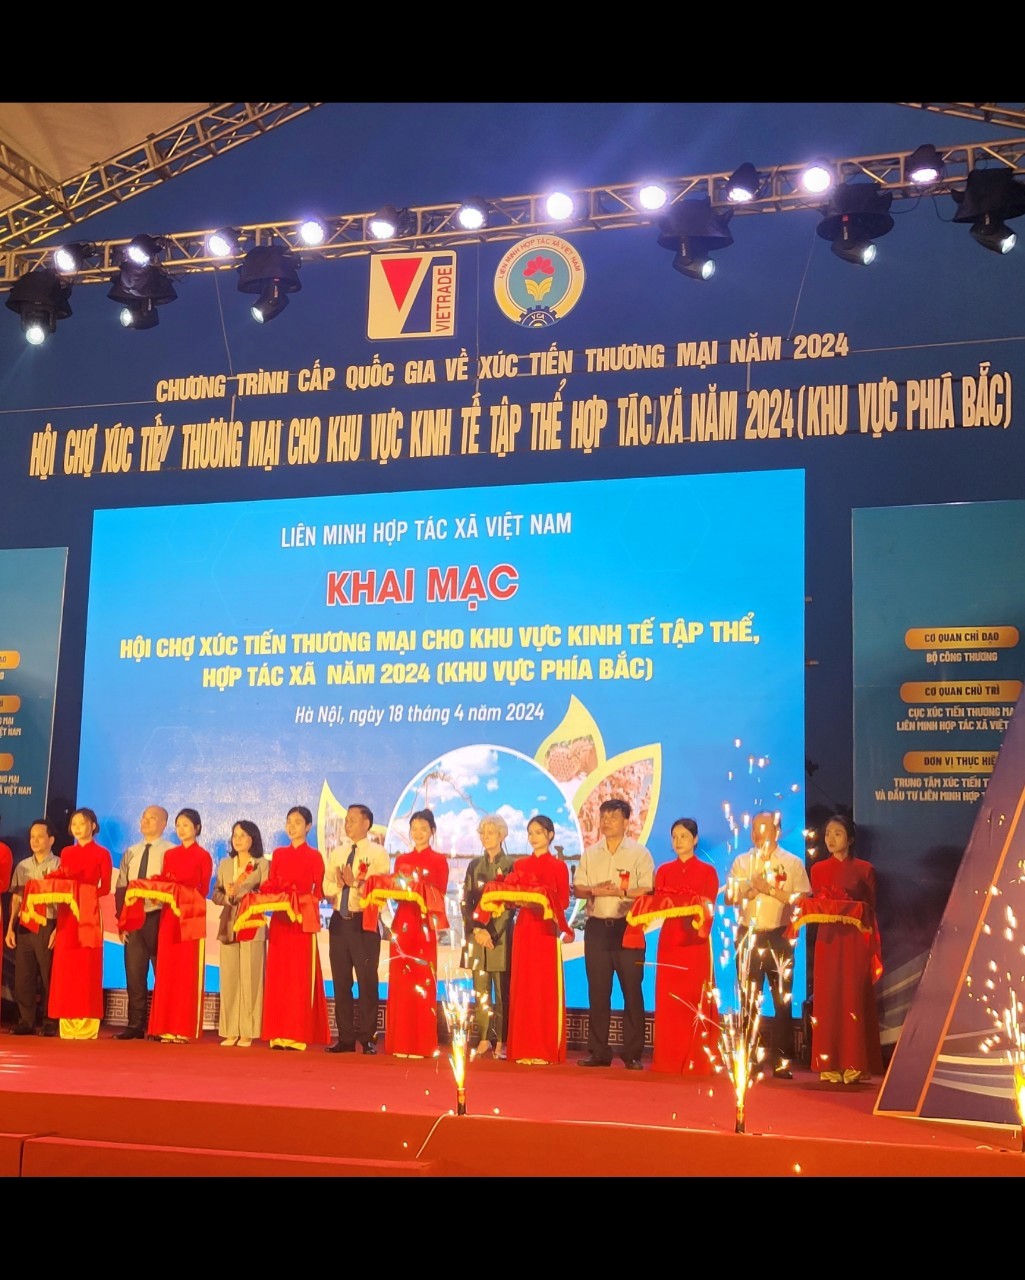 Bình phước tham gia Hội chợ xúc tiến thương mại cho khu vực kinh tế tập thể, hợp tác xã năm 2024 tại thành phố Hà Nội